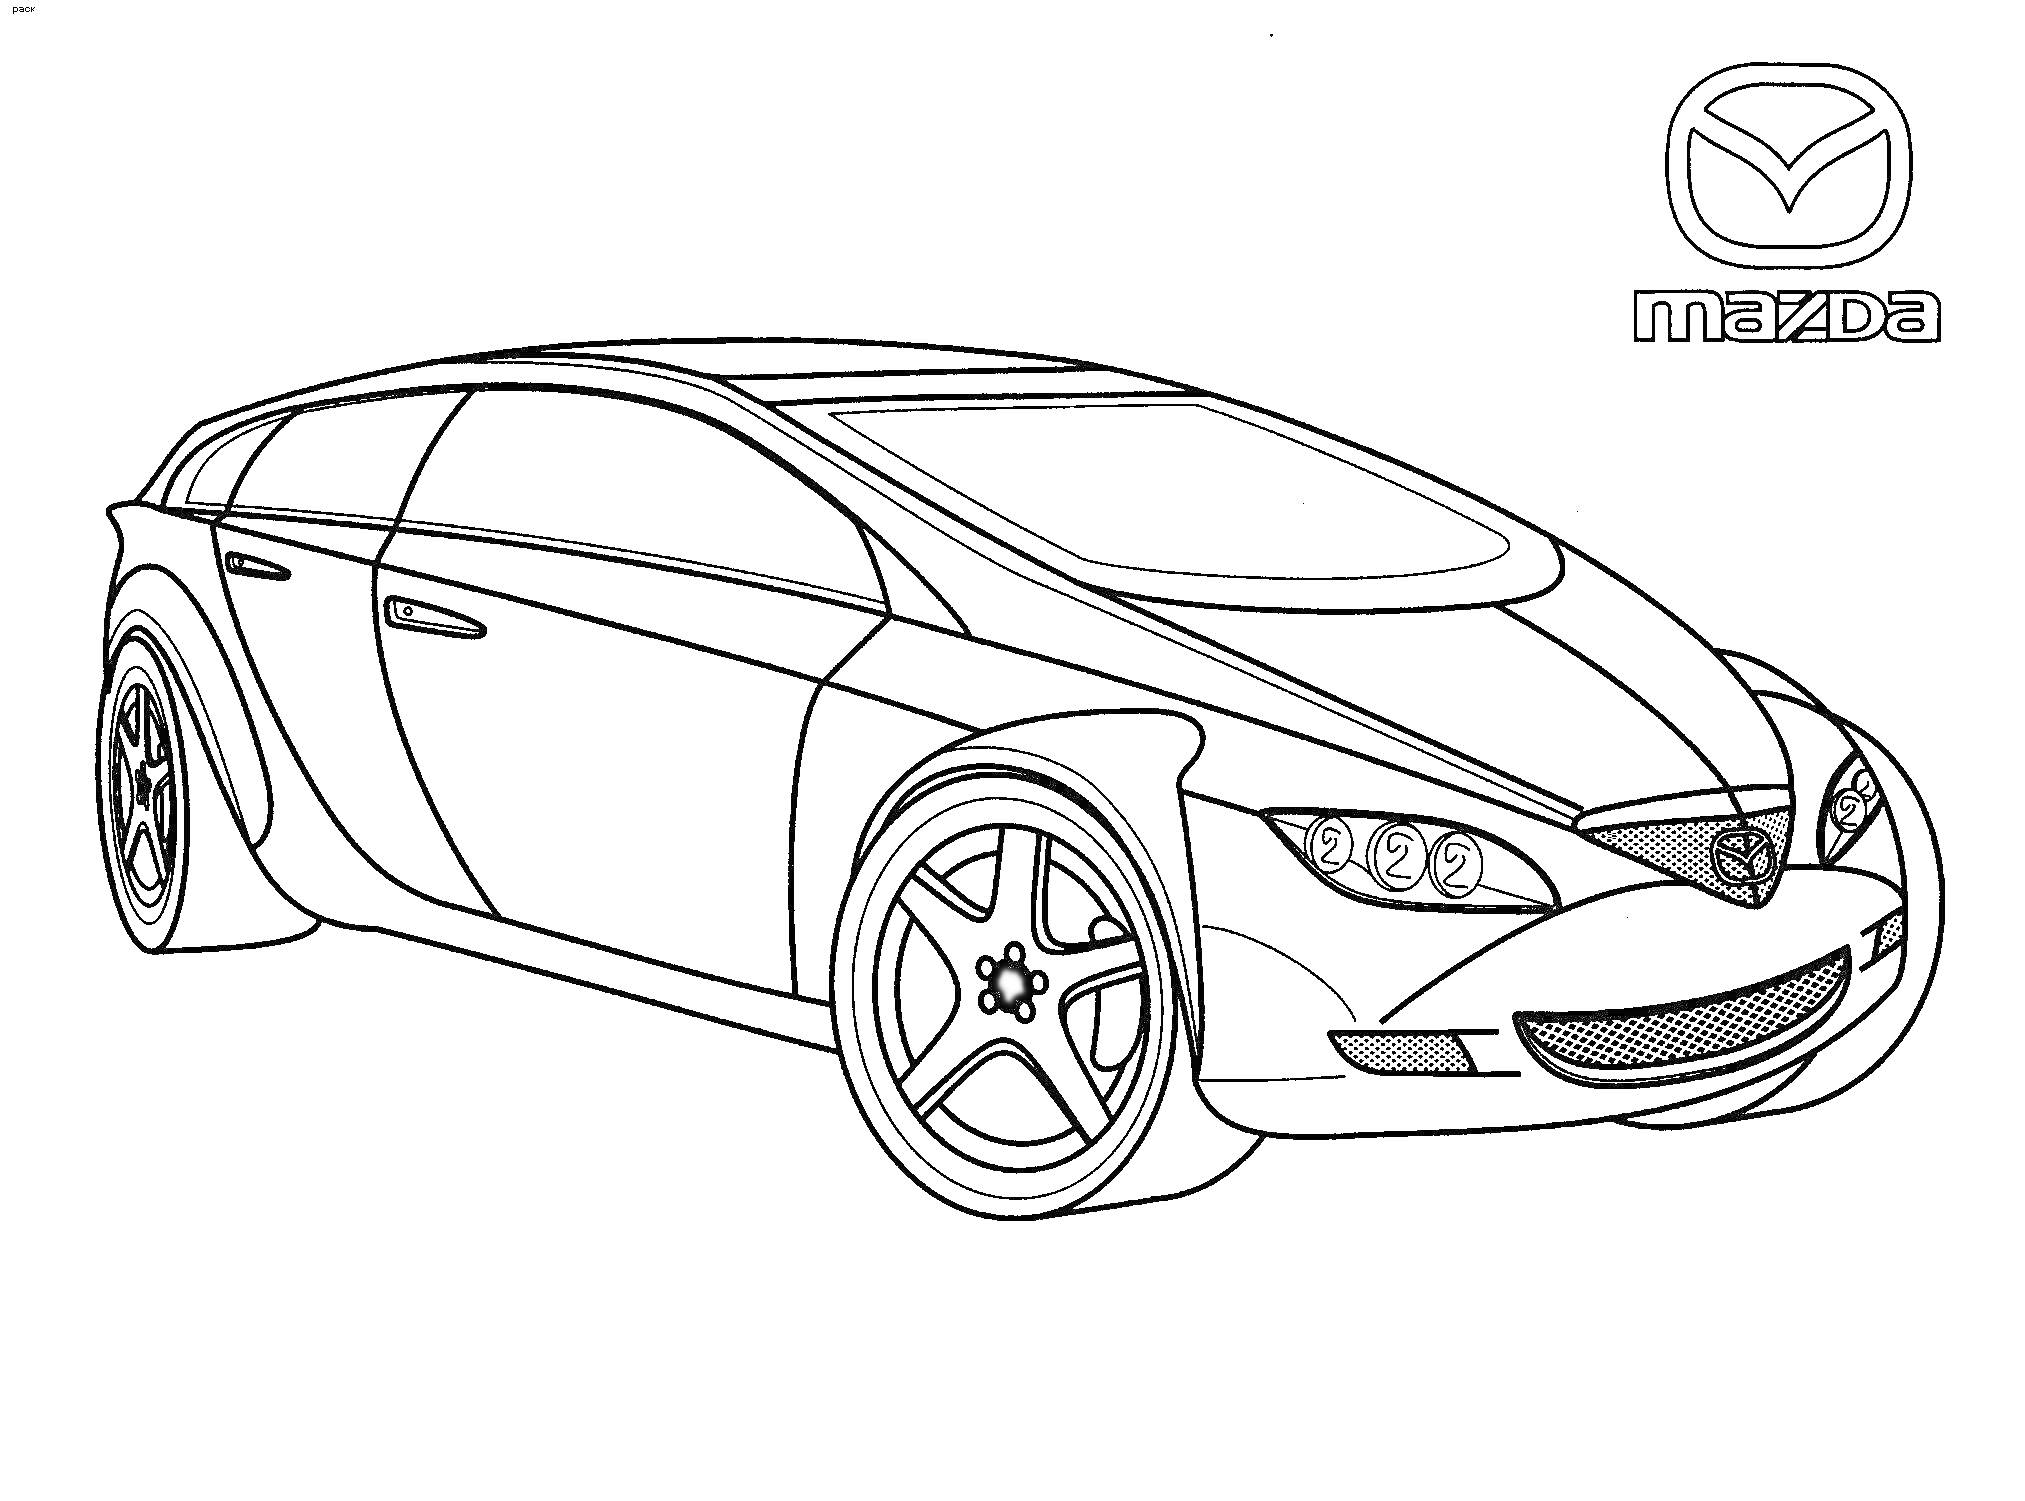 Раскраска Раскраска с изображением концептуального автомобиля марки Mazda и логотипом Mazda